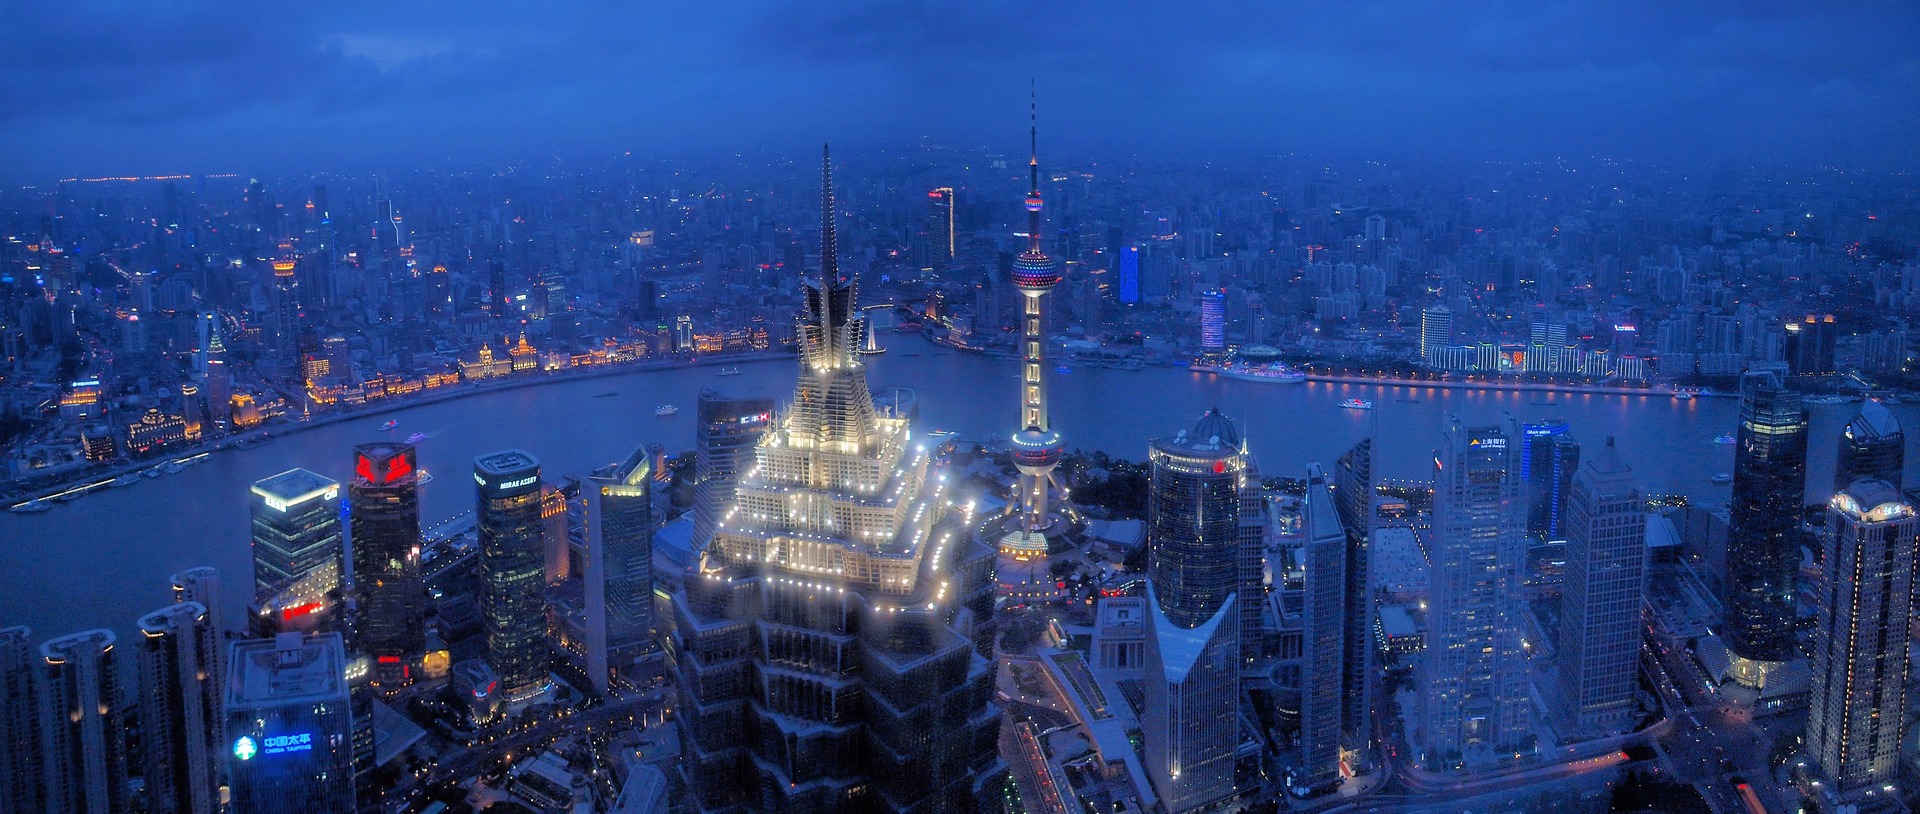 Shanghai, China skyline